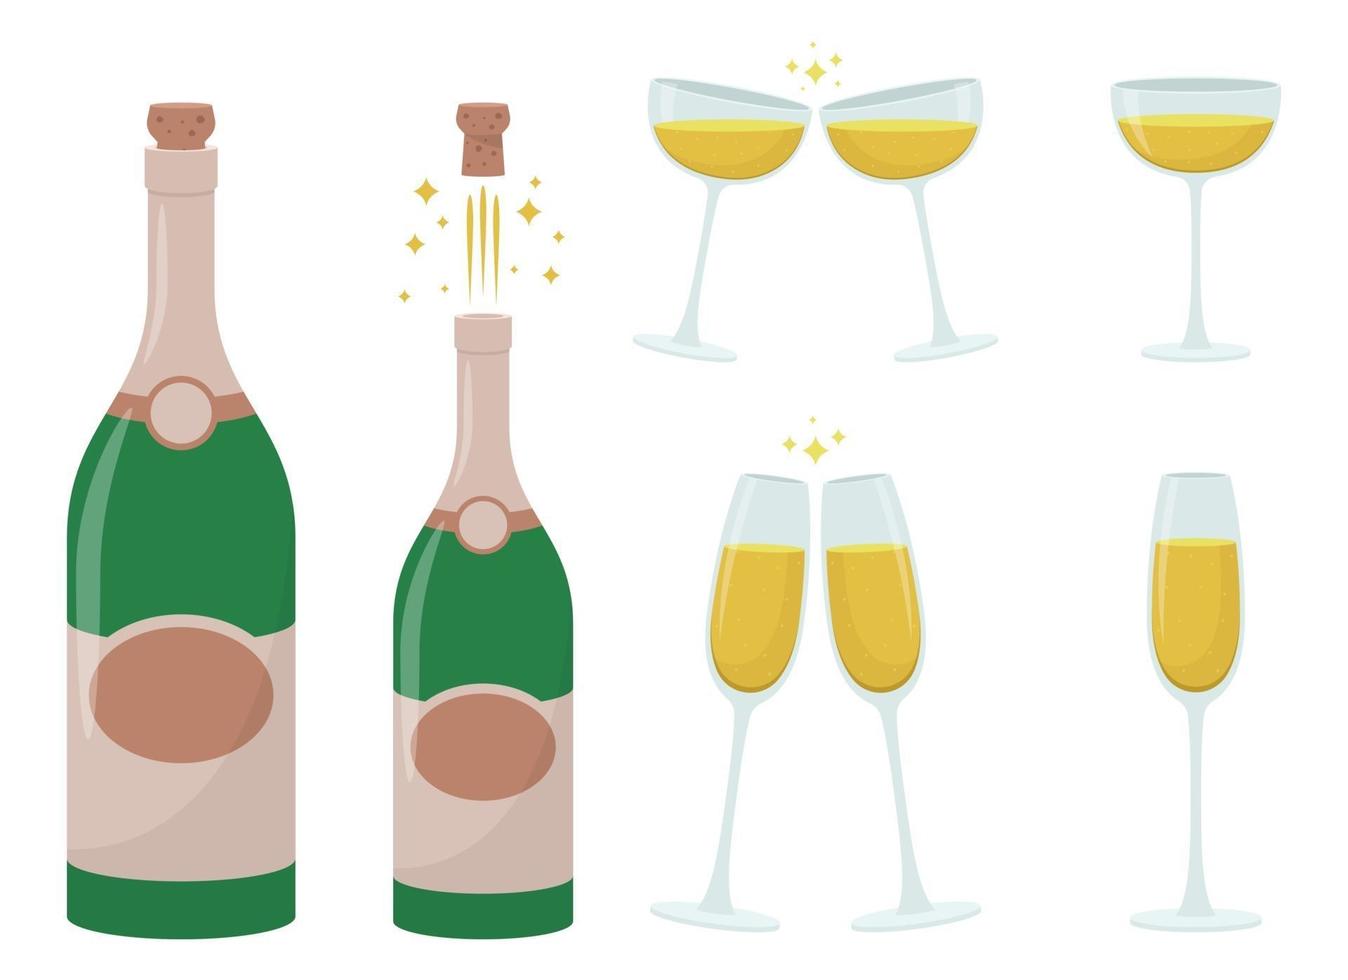 bouteille de champagne et verre vector design illustration set isolé sur fond blanc